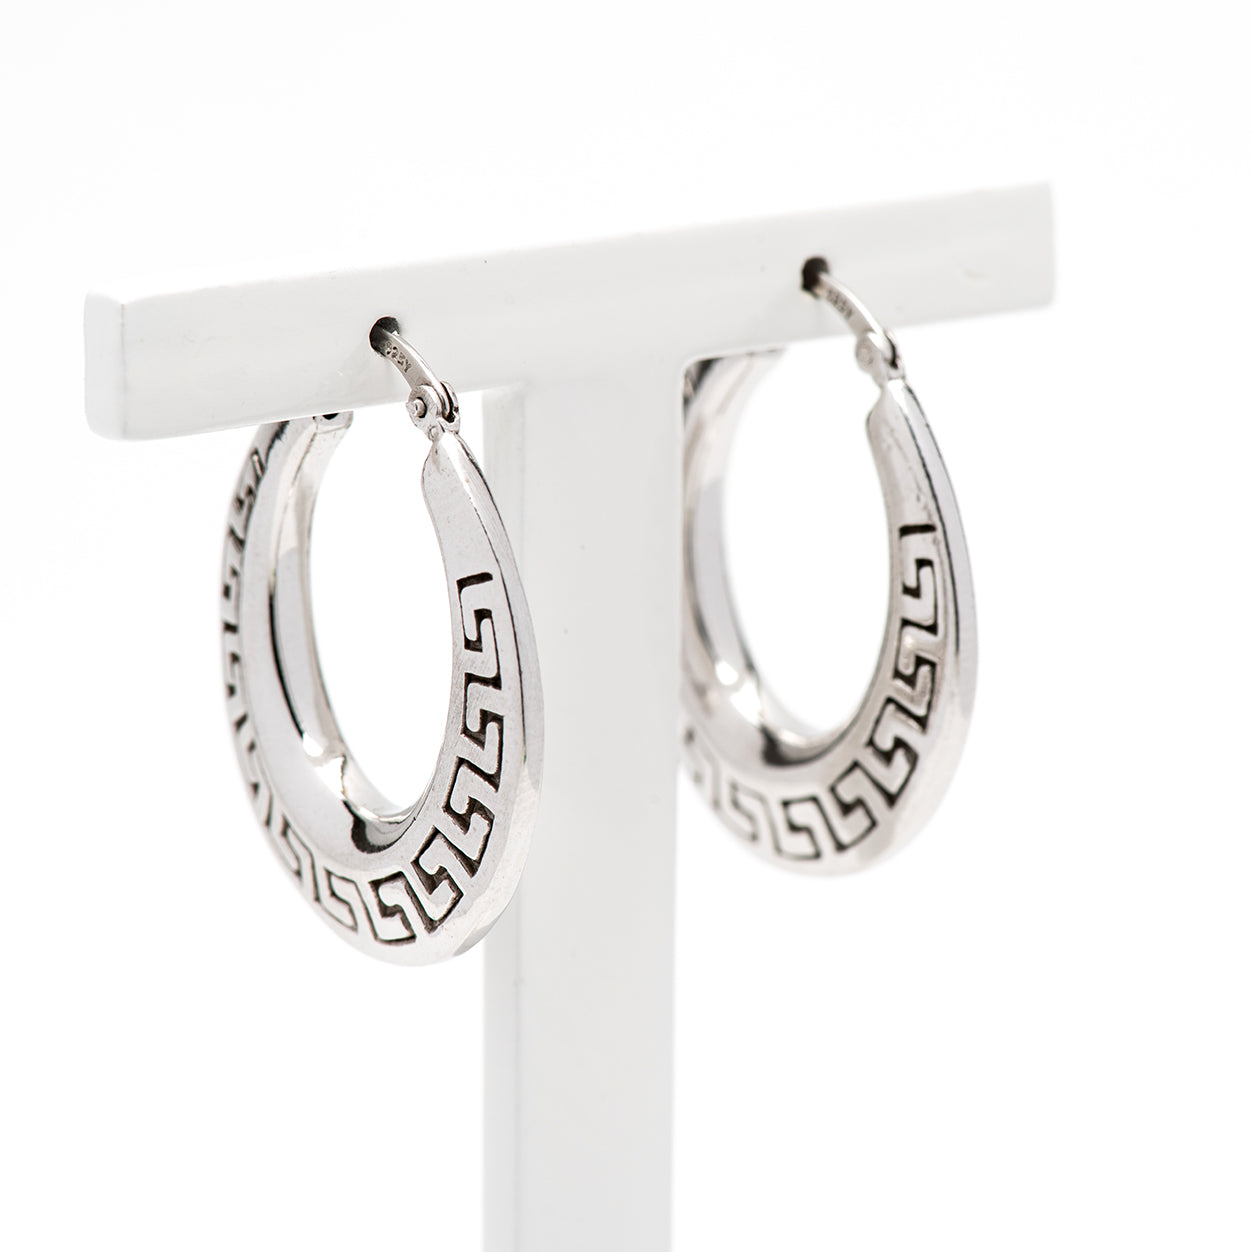 DK-925-100  light weight sterling silver earrings.